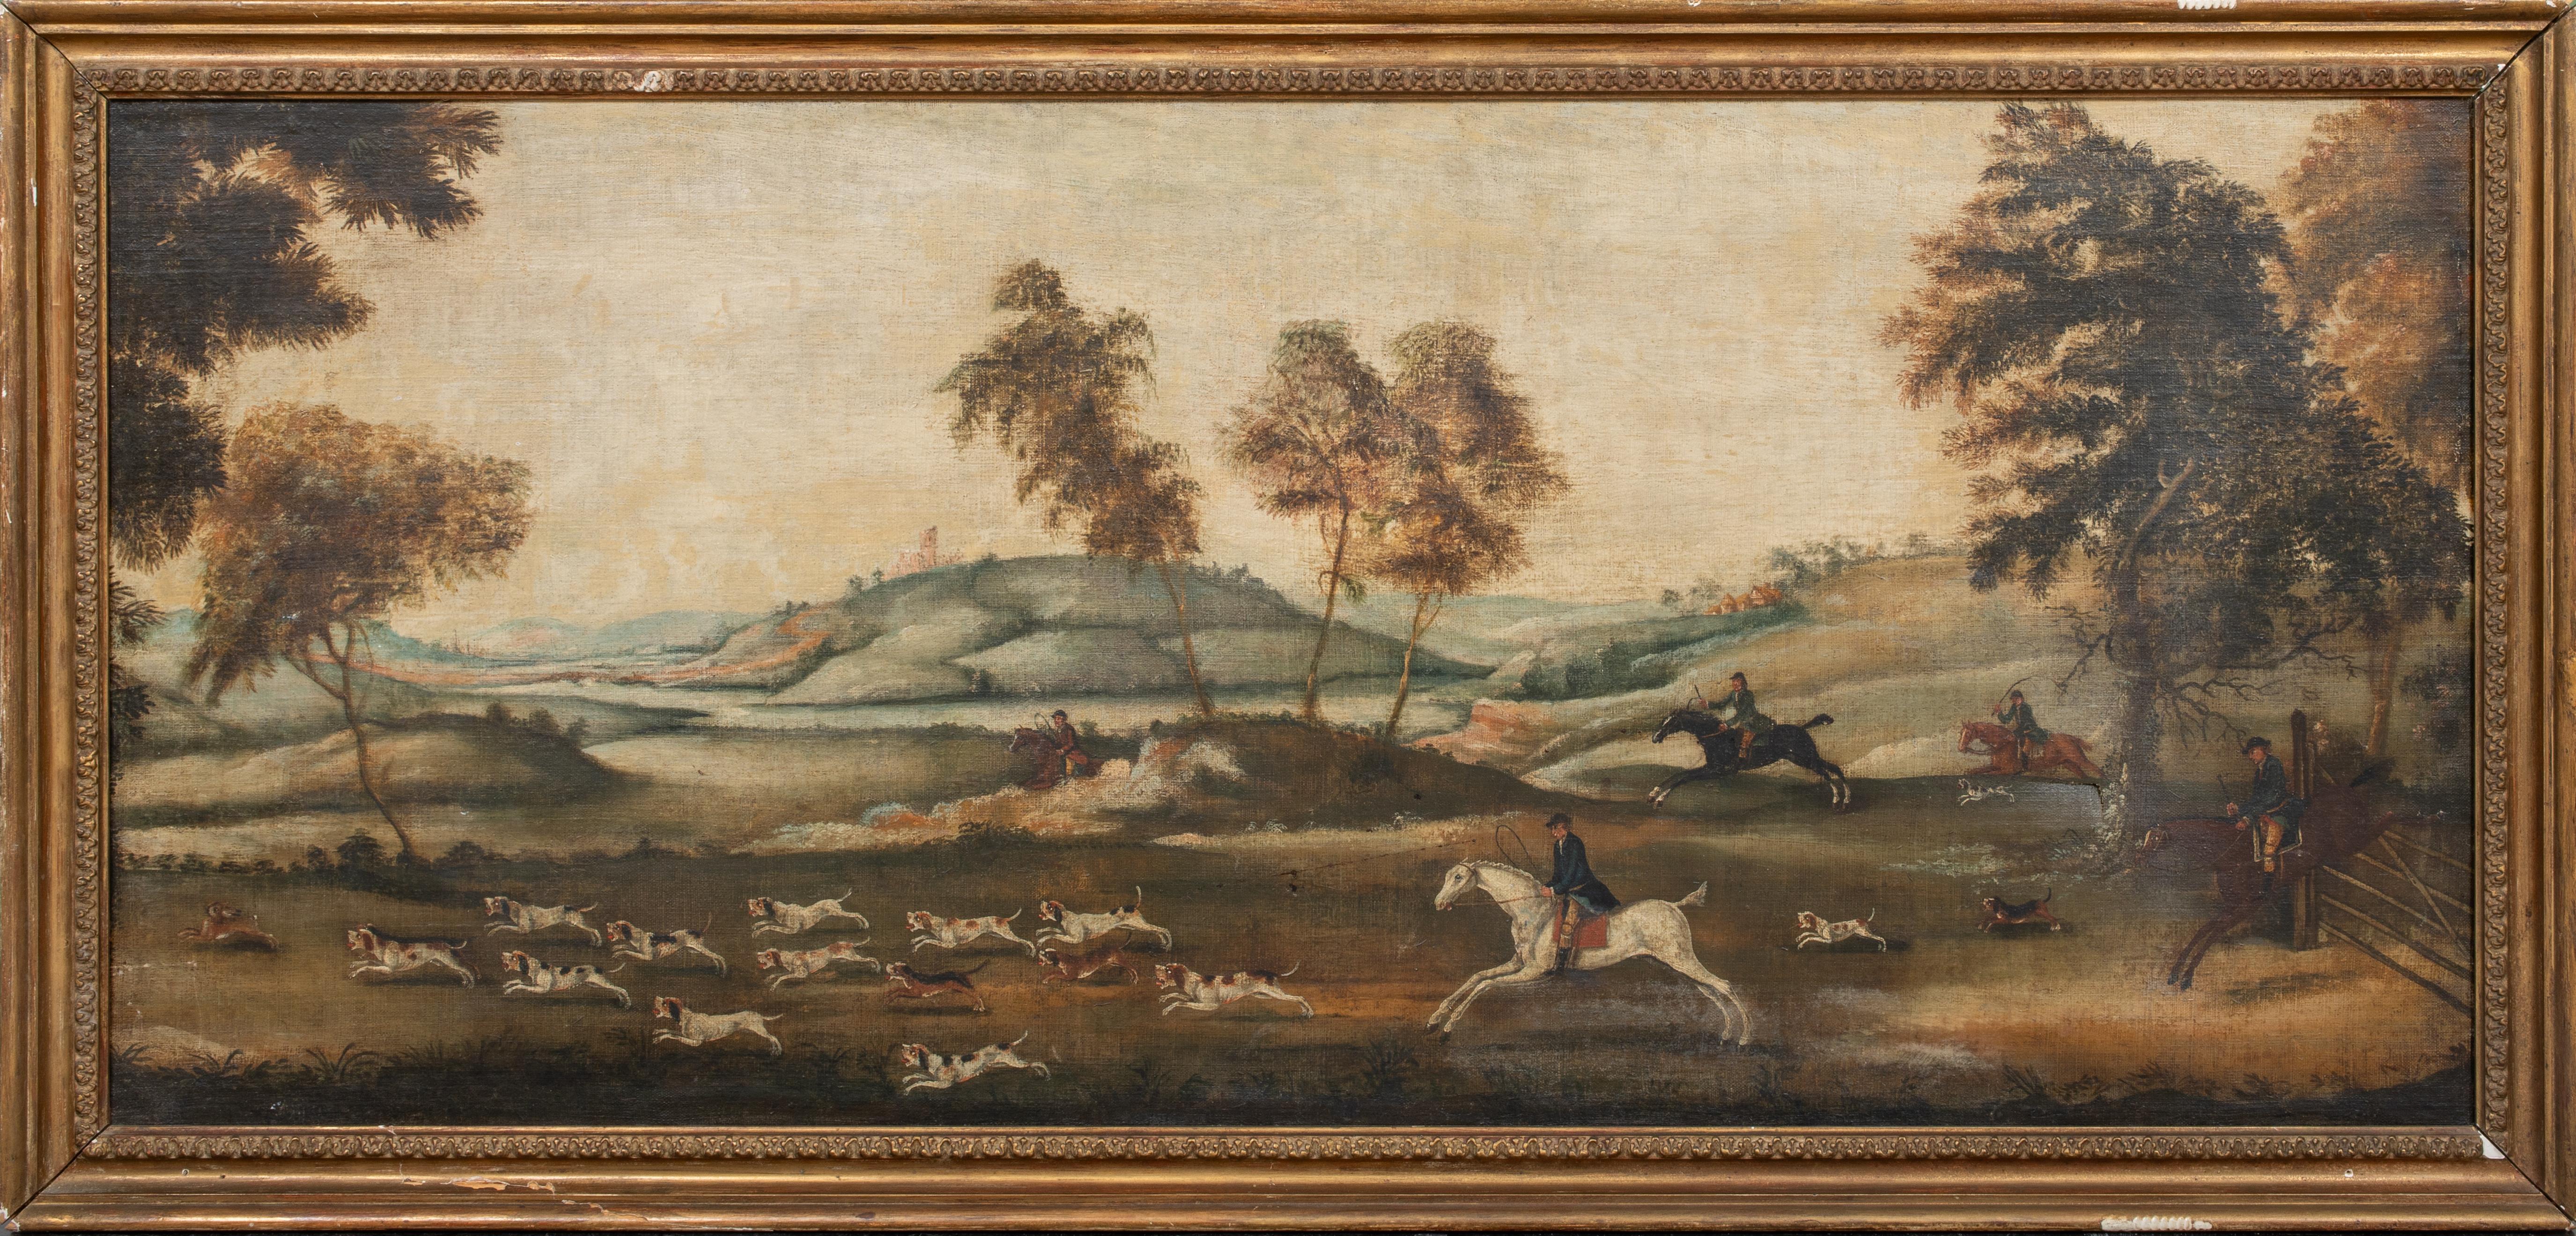 The Fox Hunting Party, datiert 1770

John Nost SARTORIUS (1759-1828) - Namen der Jagdgesellschaft vom Künstler verso vollständig bezeichnet

Große englische Fuchsjagdlandschaft aus dem 18. Jahrhundert, Öl auf Leinwand, JohnNost Sartorius